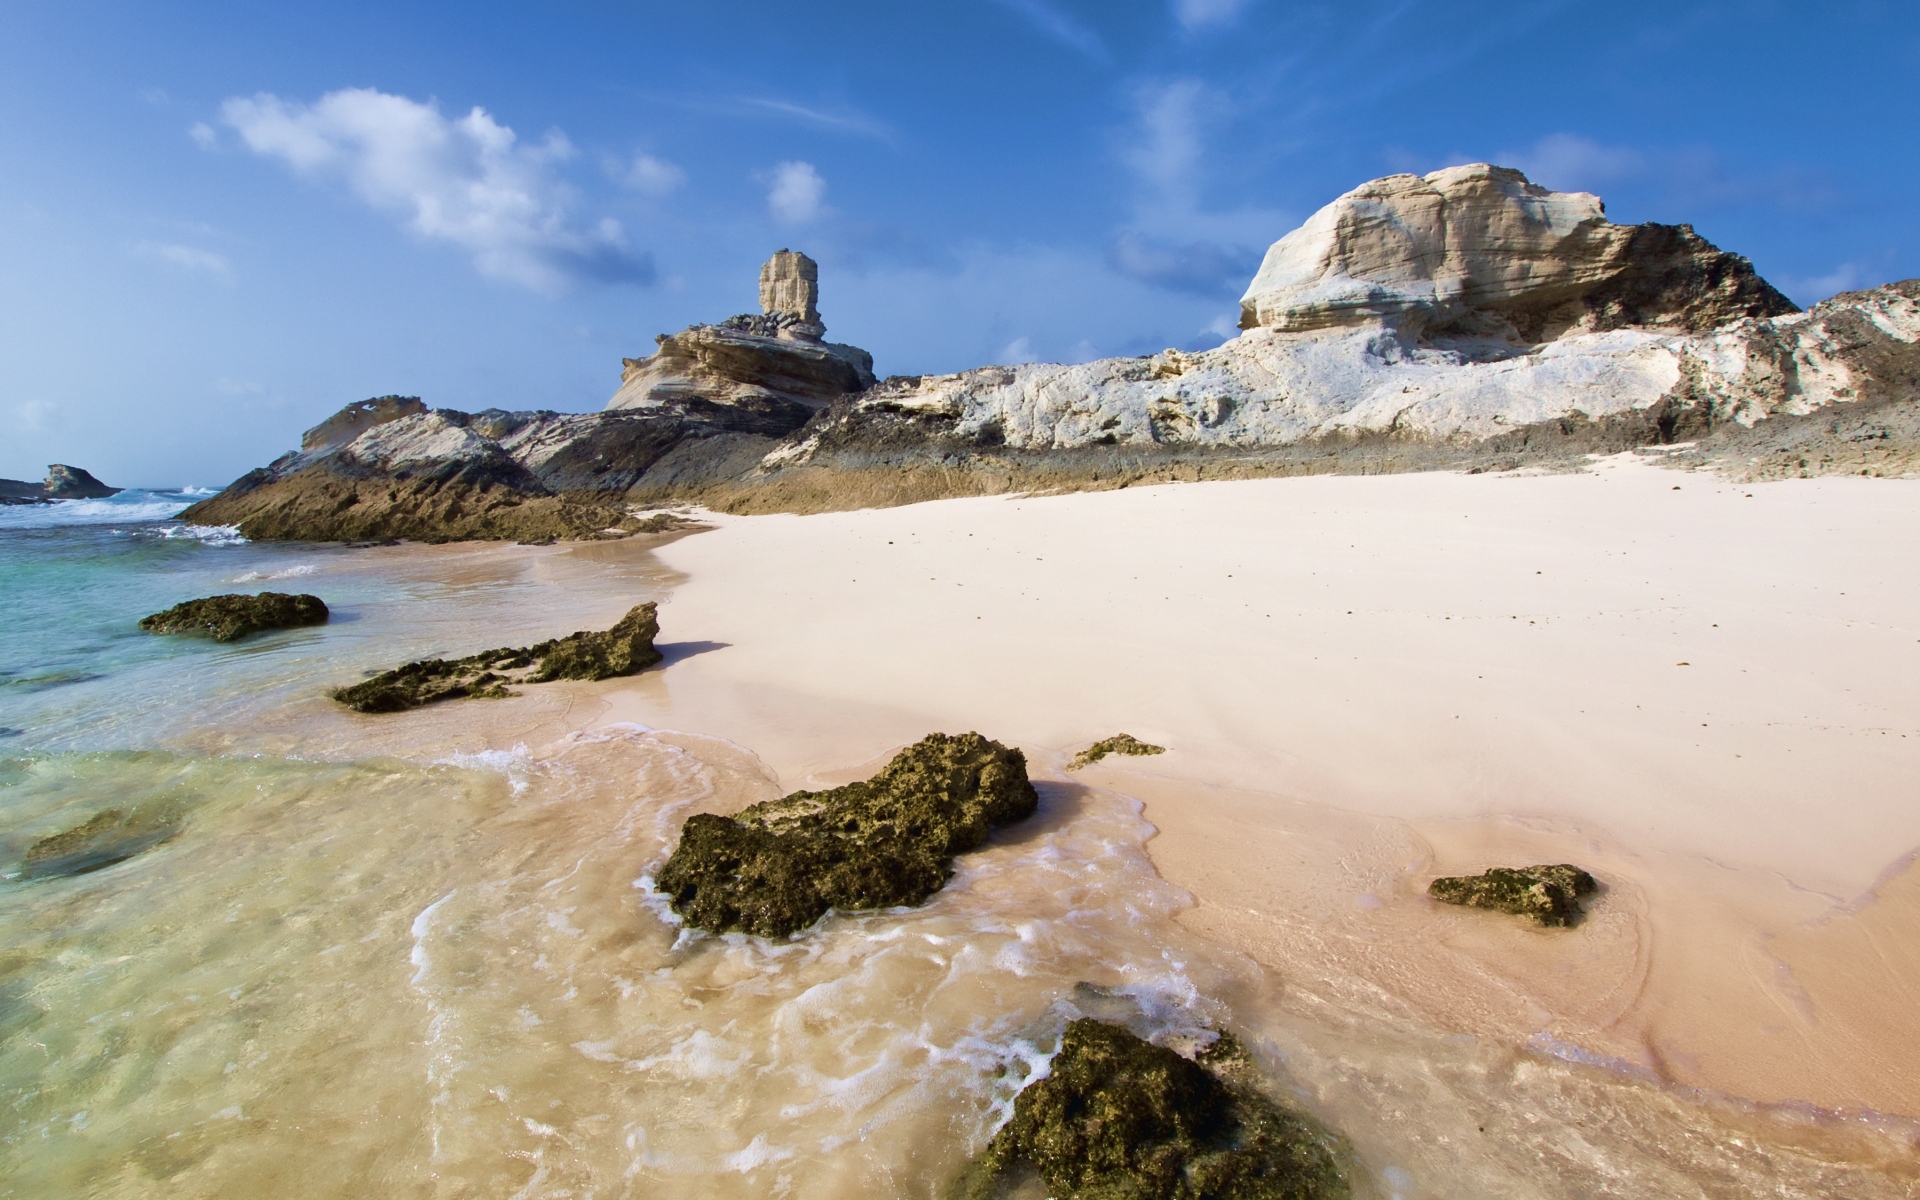 Картинки Рифы, побережье, песок, скалы, пляж, небо, синий, солнечно фото и обои на рабочий стол